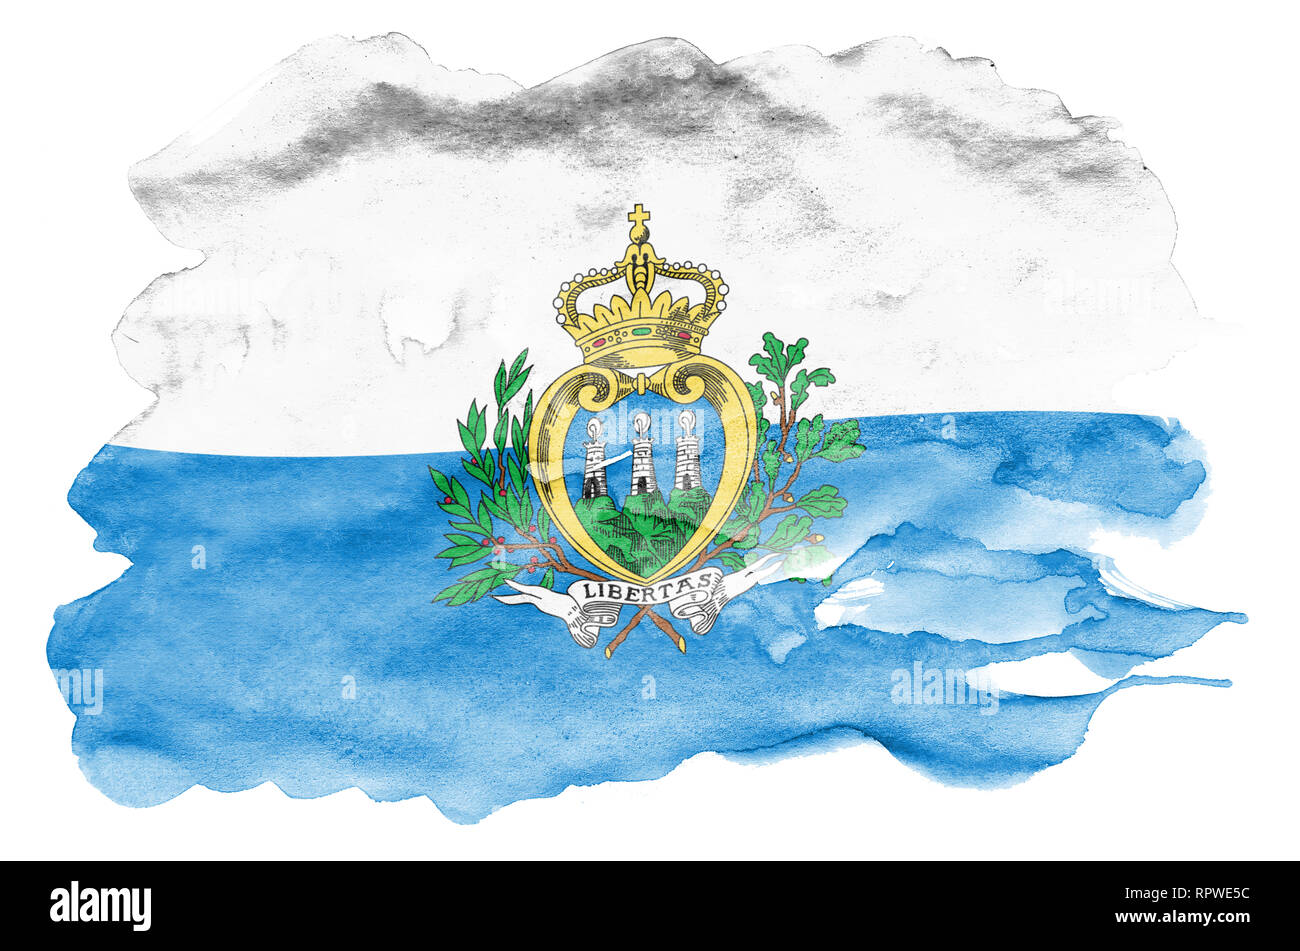 Saint-marin drapeau est représenté dans un style aquarelle liquide isolé sur fond blanc. Peinture imprudente avec ombrage image de drapeau national. L'indépendance Banque D'Images